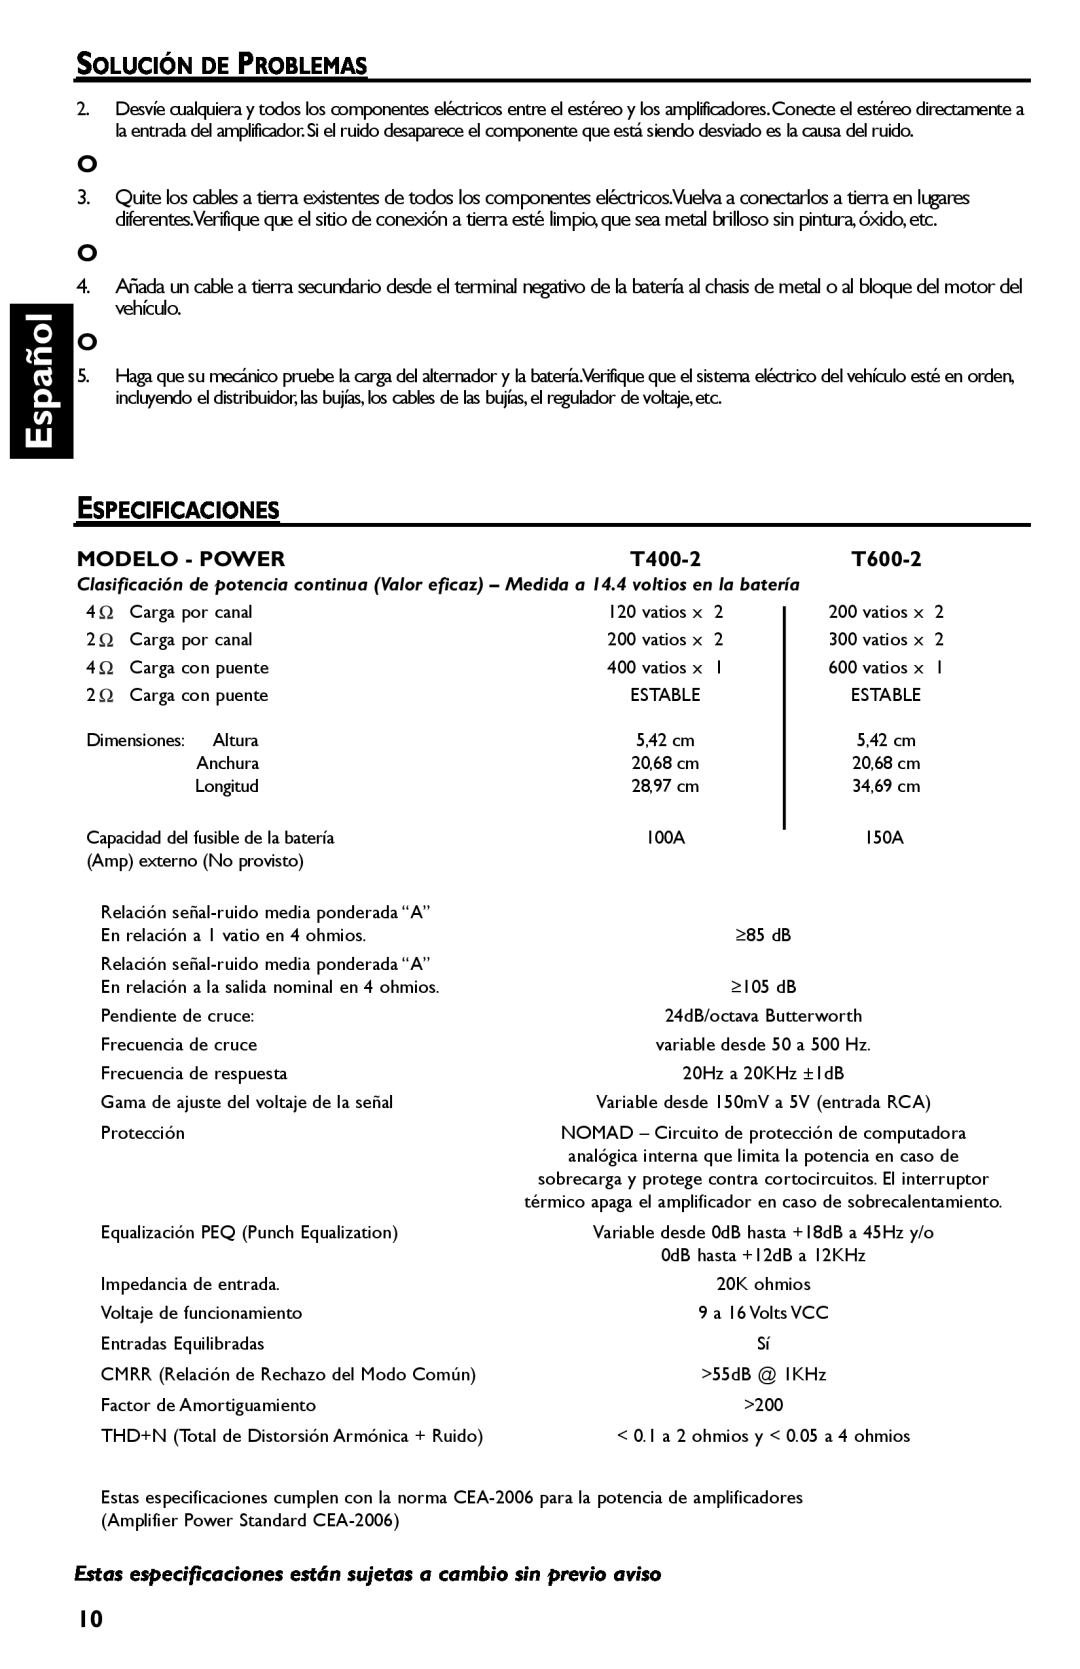 Rockford Fosgate T600-2 manual Español, Solución De Problemas, Especificaciones, Modelo - Power, T400-2 